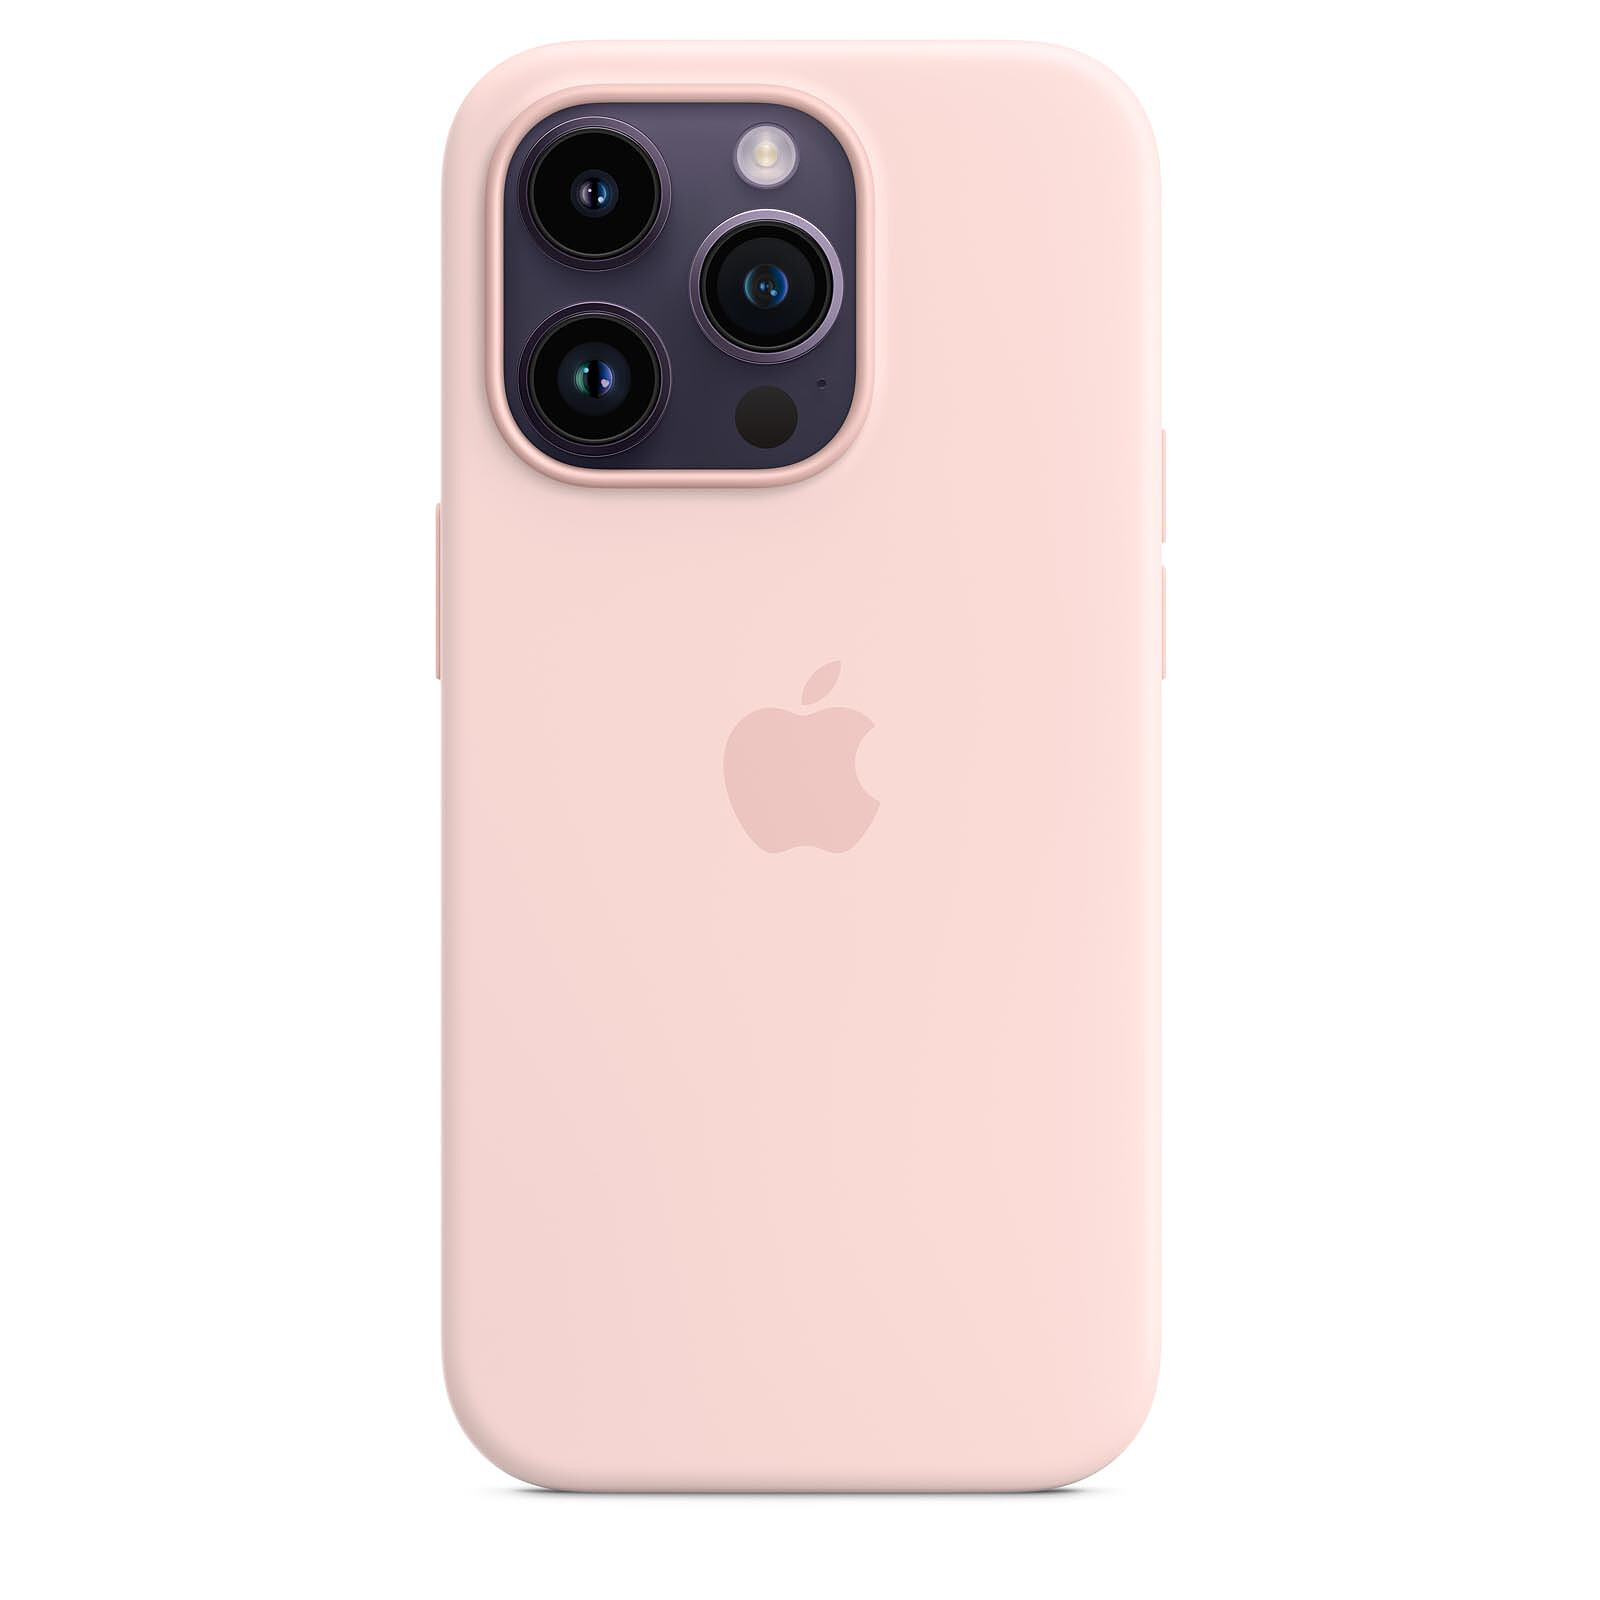 Funda Apple Silicone Case Rosa arena para iPhone 7/8 - Funda para